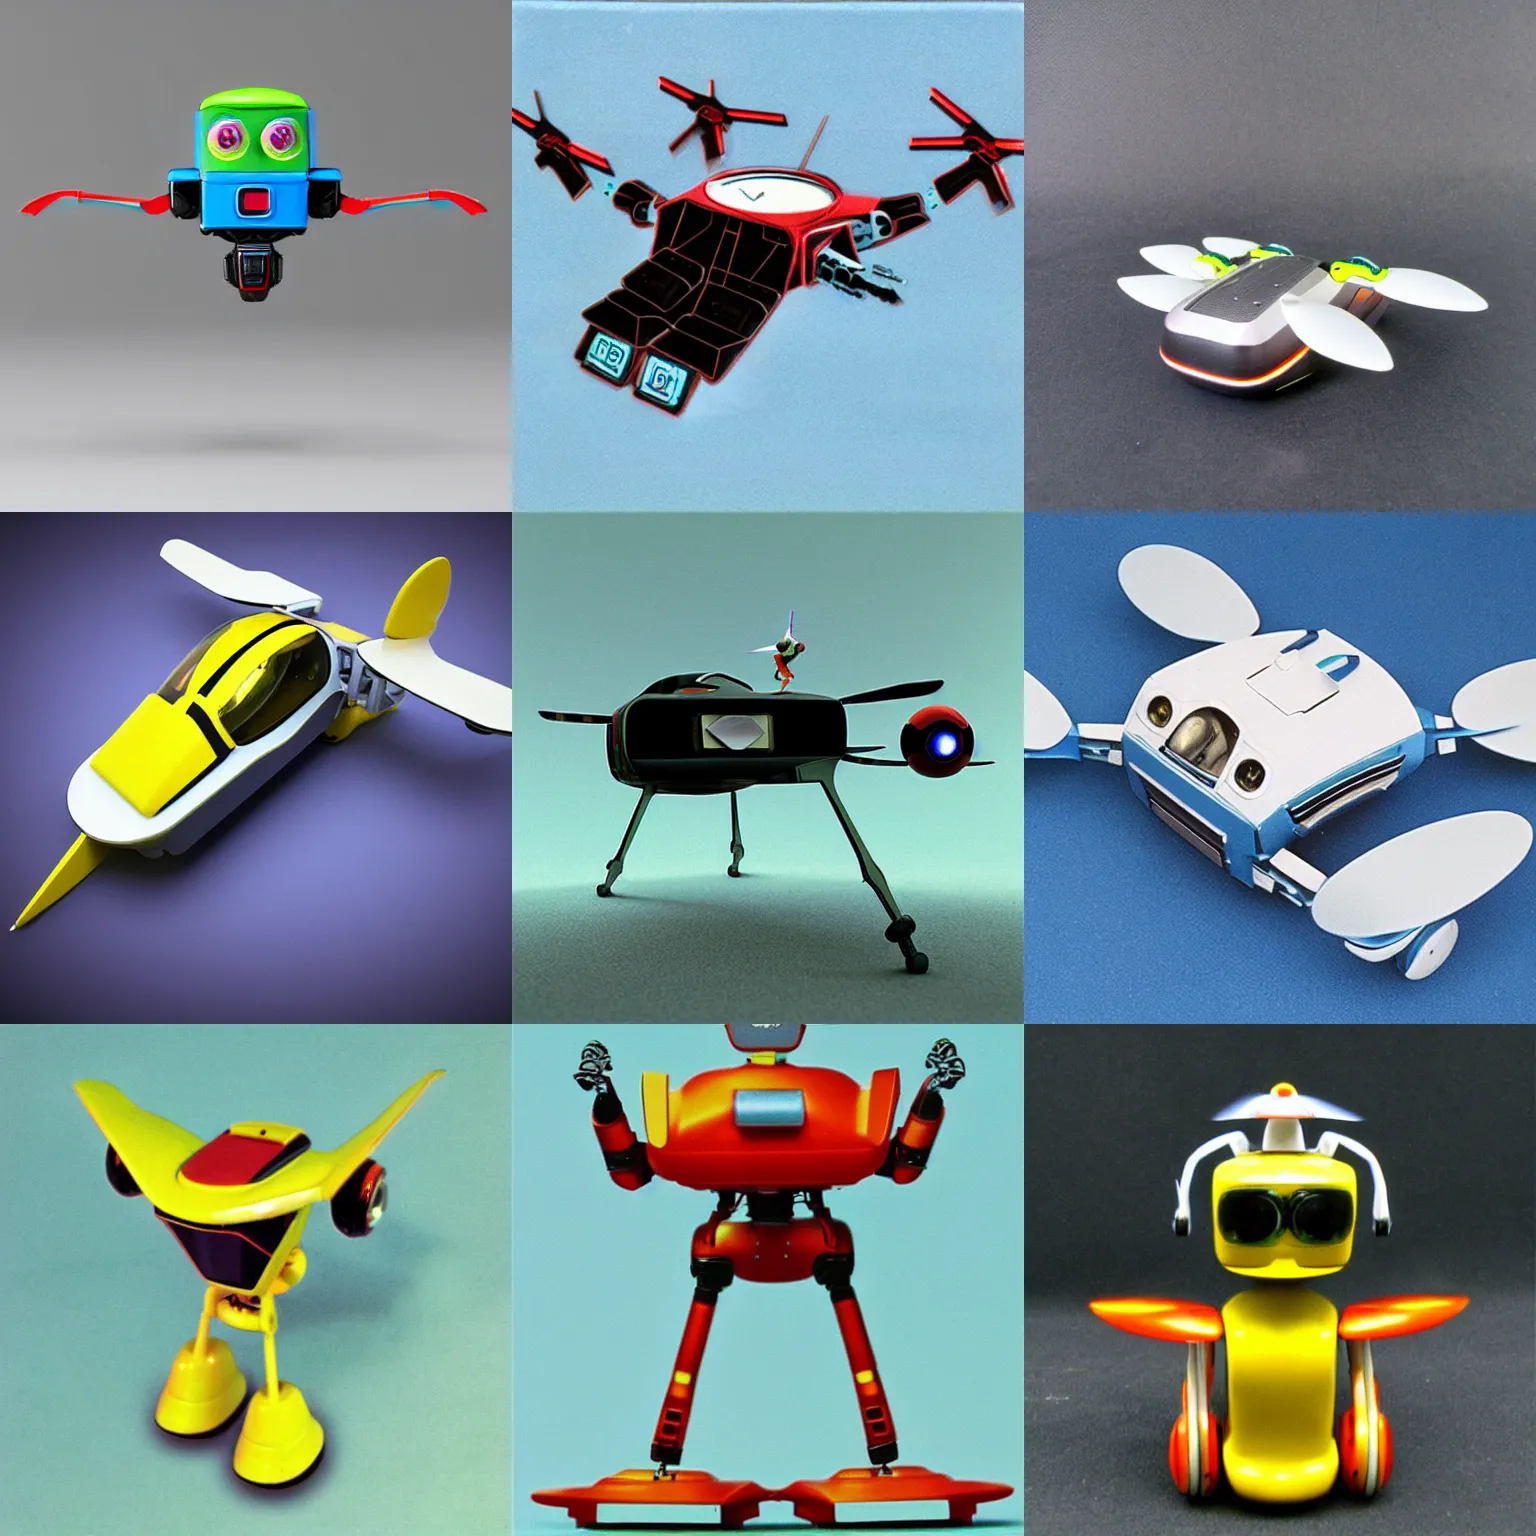 Prompt: mini flying robot, 1 9 8 0 s retro - futuristic, hyper realistic